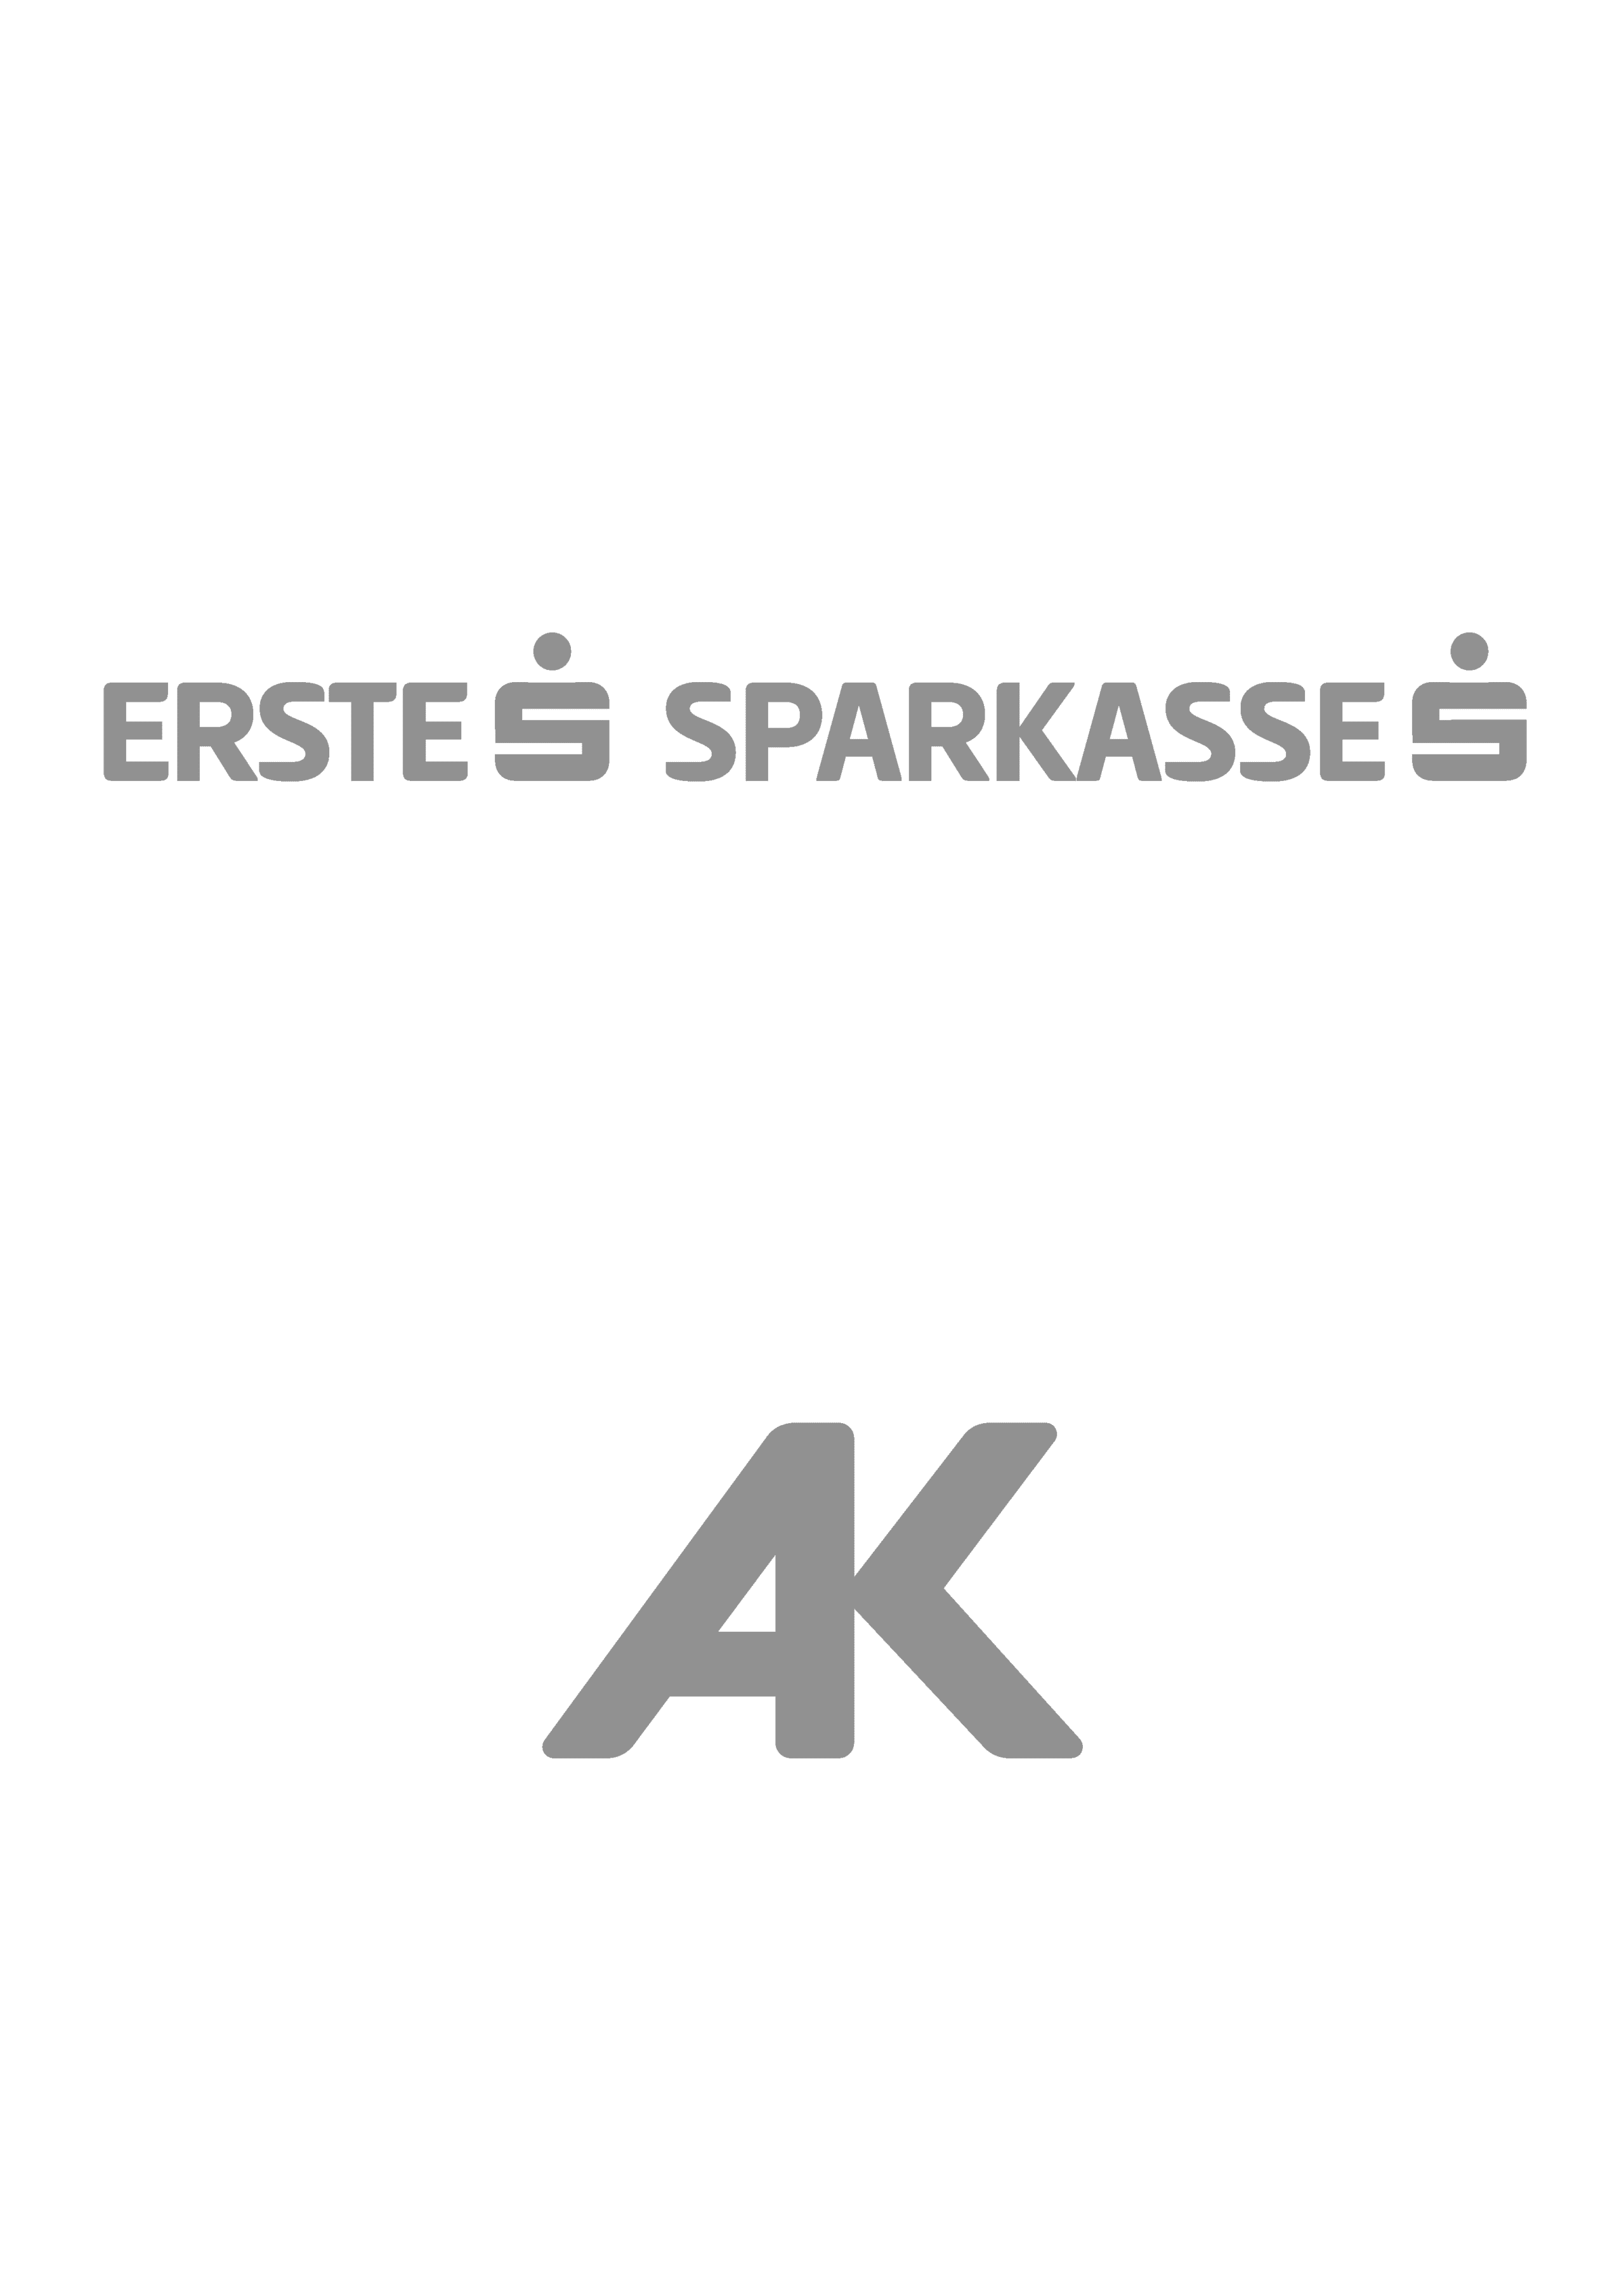 EBSK_EB_AK-1